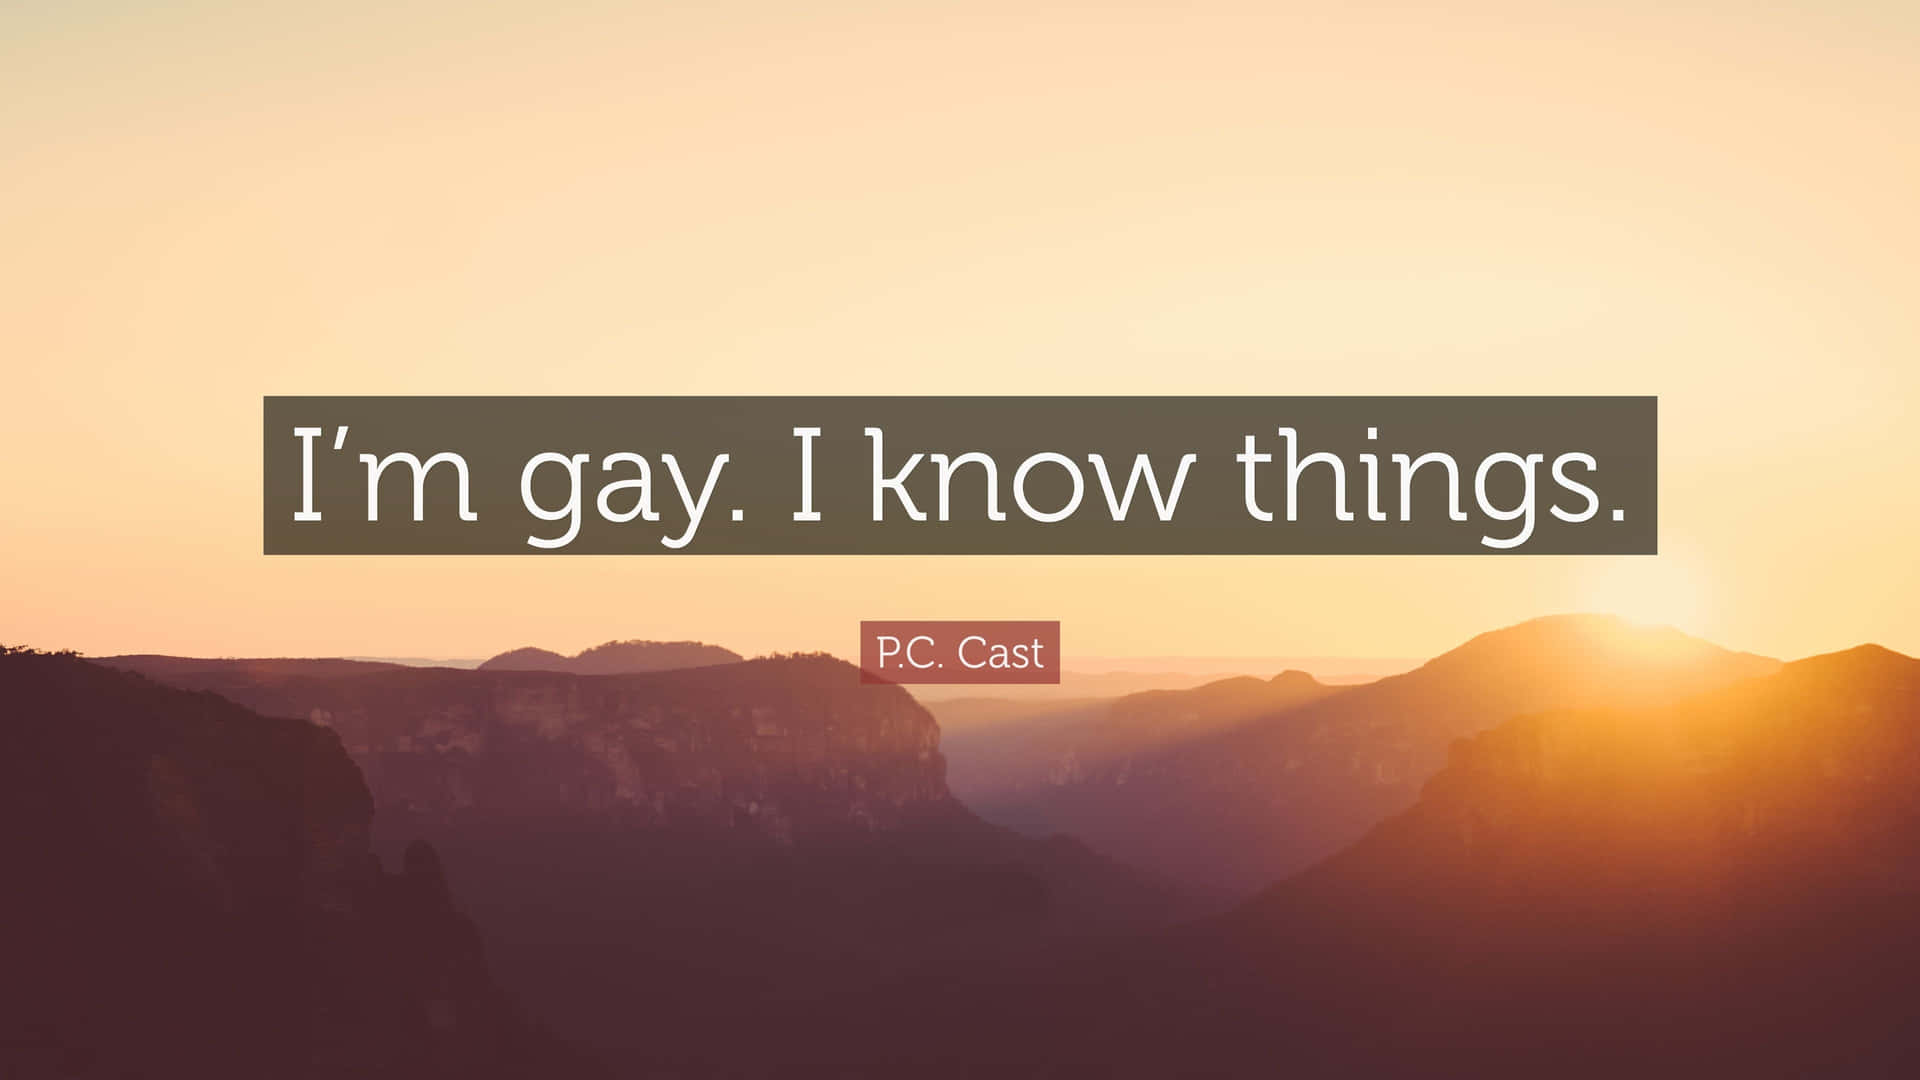 I'm Gay Self-awareness Quote Wallpaper